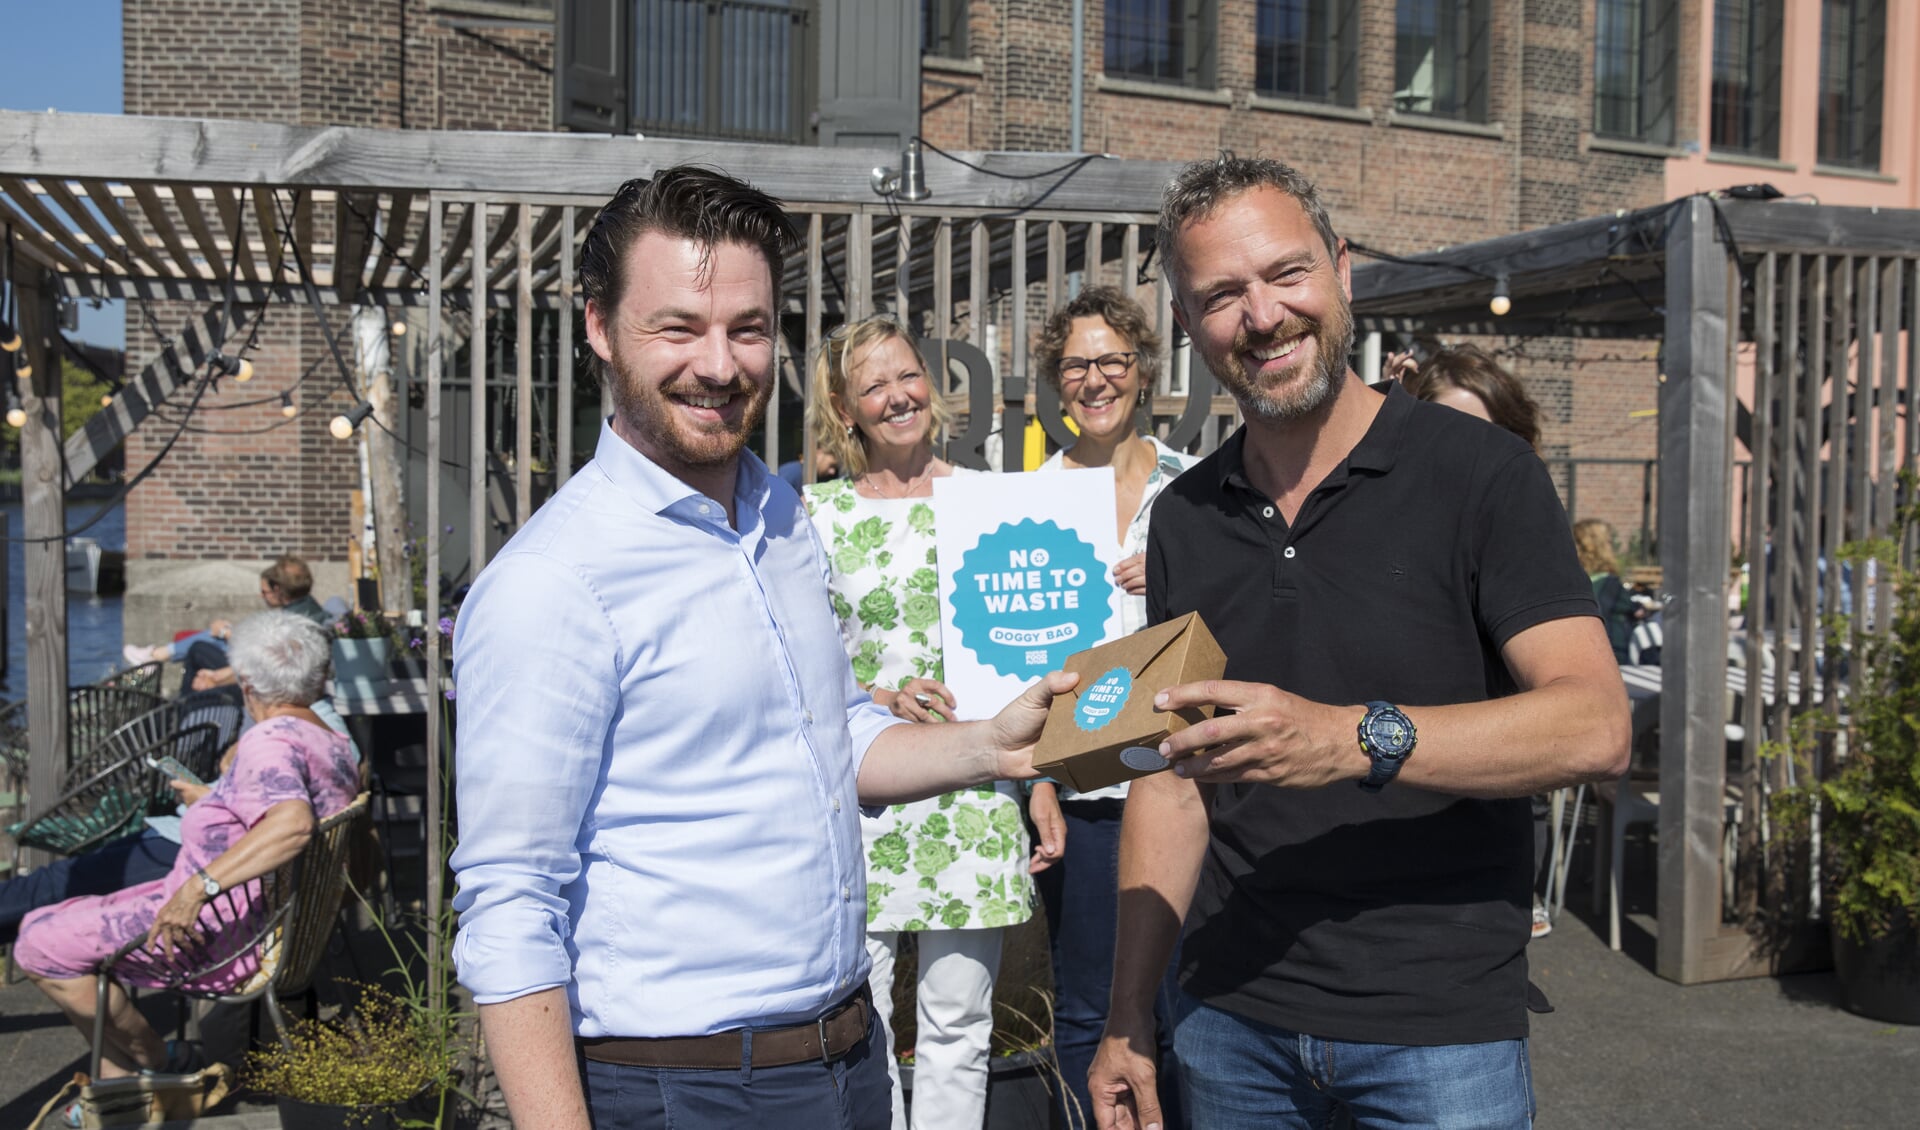 Links wethouder Robbert Berkthout die Frank van Baaren, eigenaar van restaurant Frisk aan het Spaarne en bestuurslid Koninklijke Horeca Nederland, het eerste exemplaar aanbiedt.